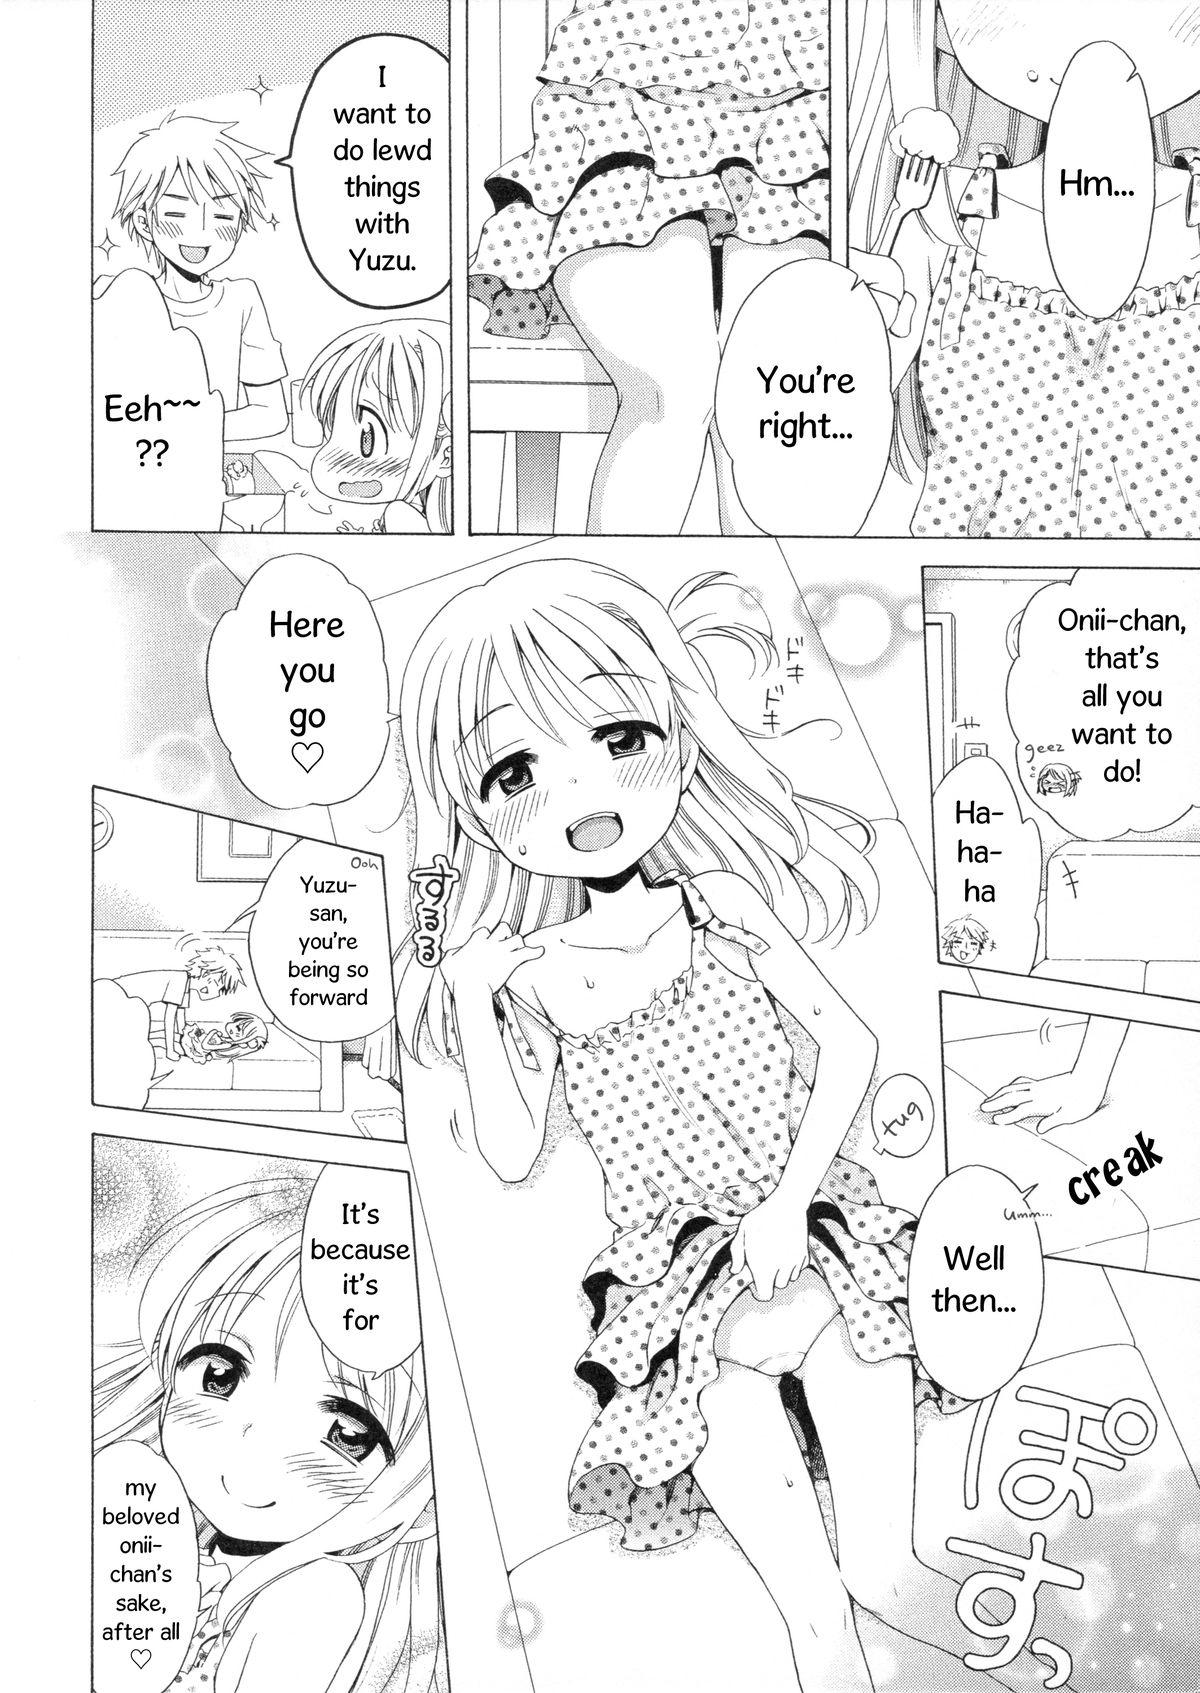 Affair Yuzuminatsu to Issyo Teenporno - Page 3